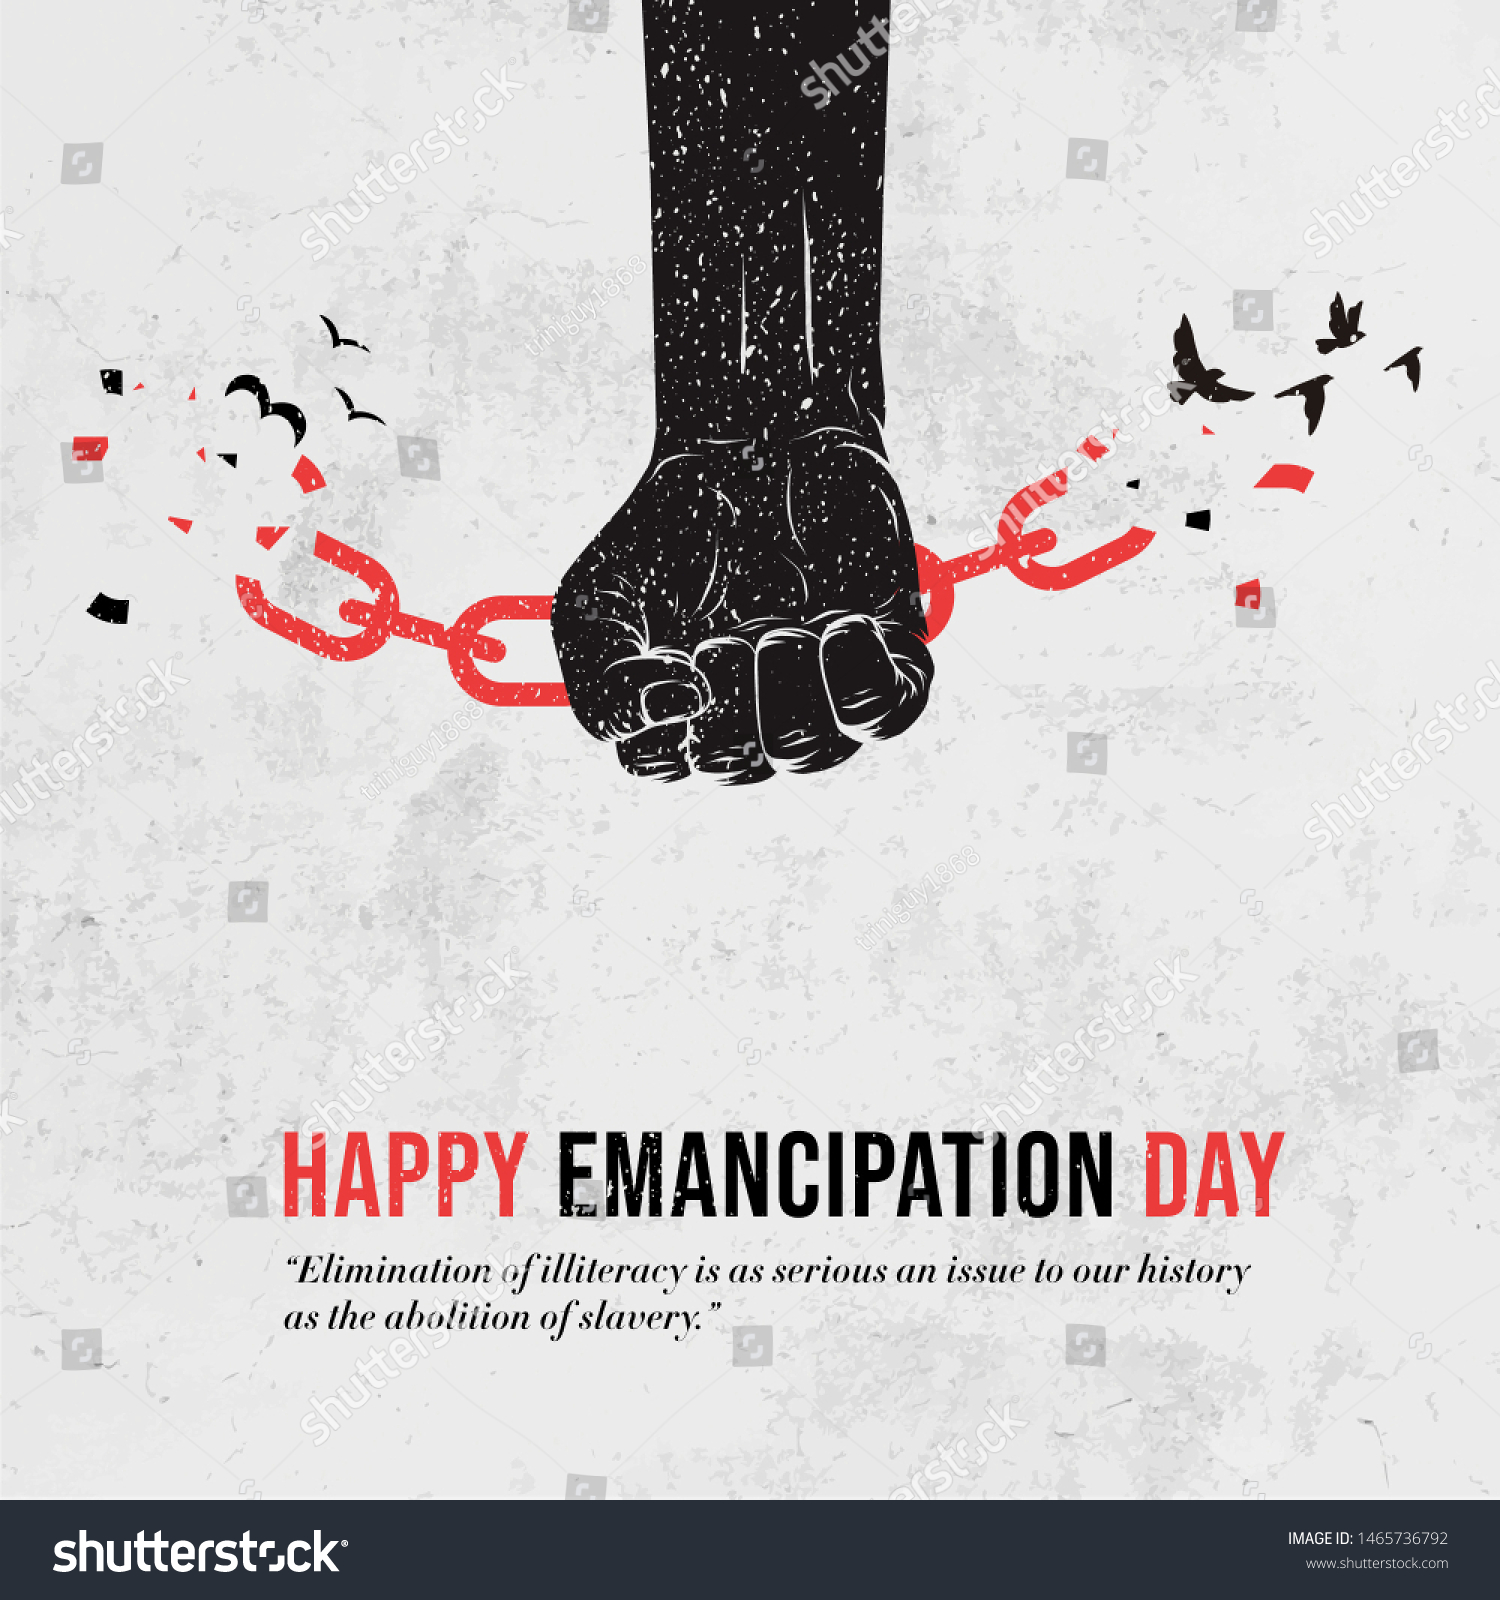 7.650 afbeeldingen voor Emancipation day afbeeldingen, stockfoto‘s en